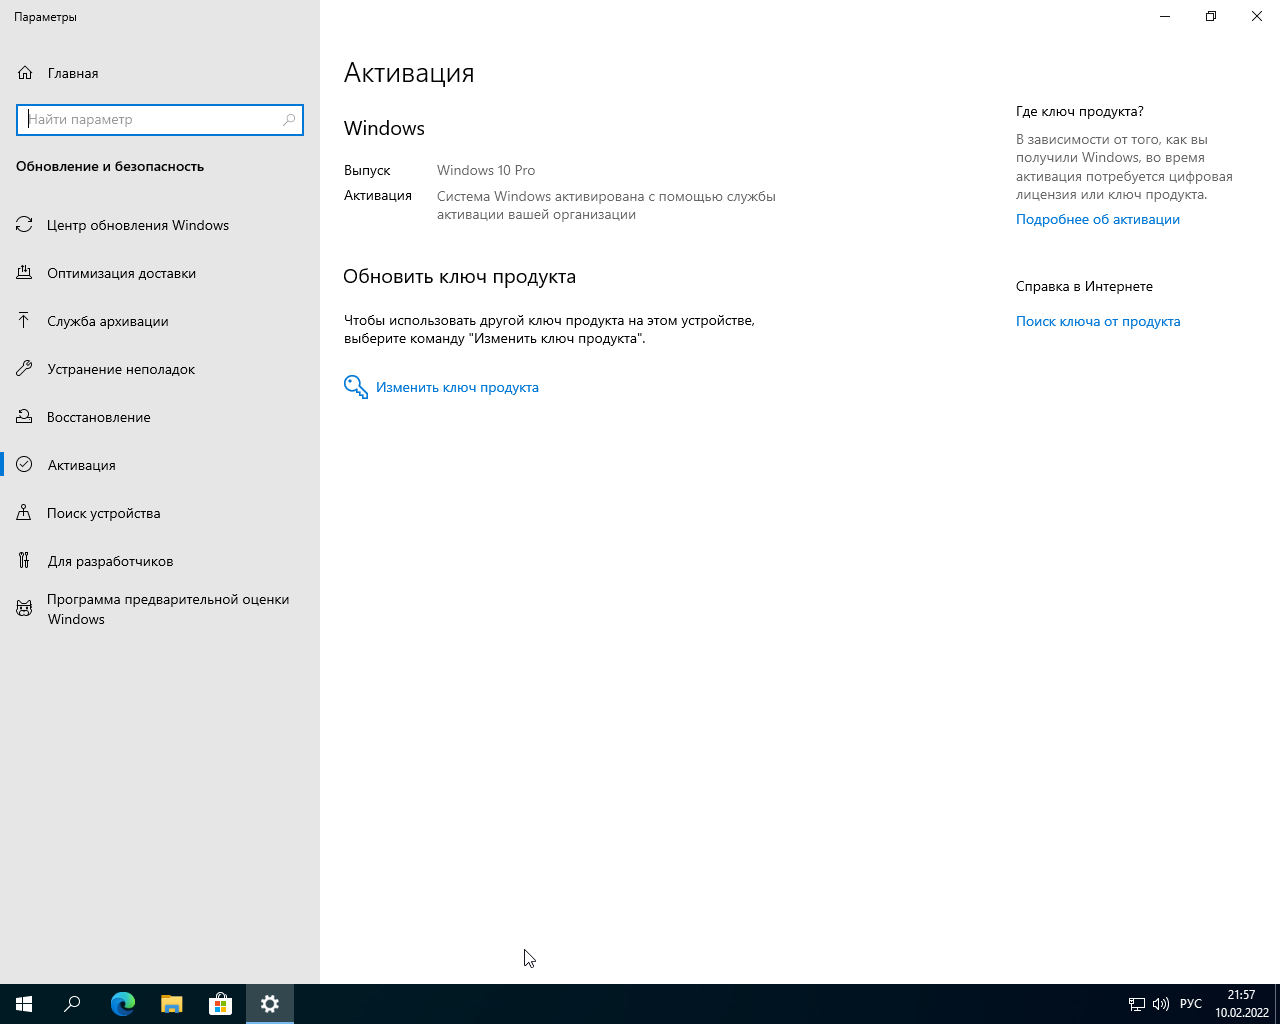 Windows 10 Pro VL x64 21Н2 (build 19044.1526) by ivandubskoj 10.02.2022 [Ru]